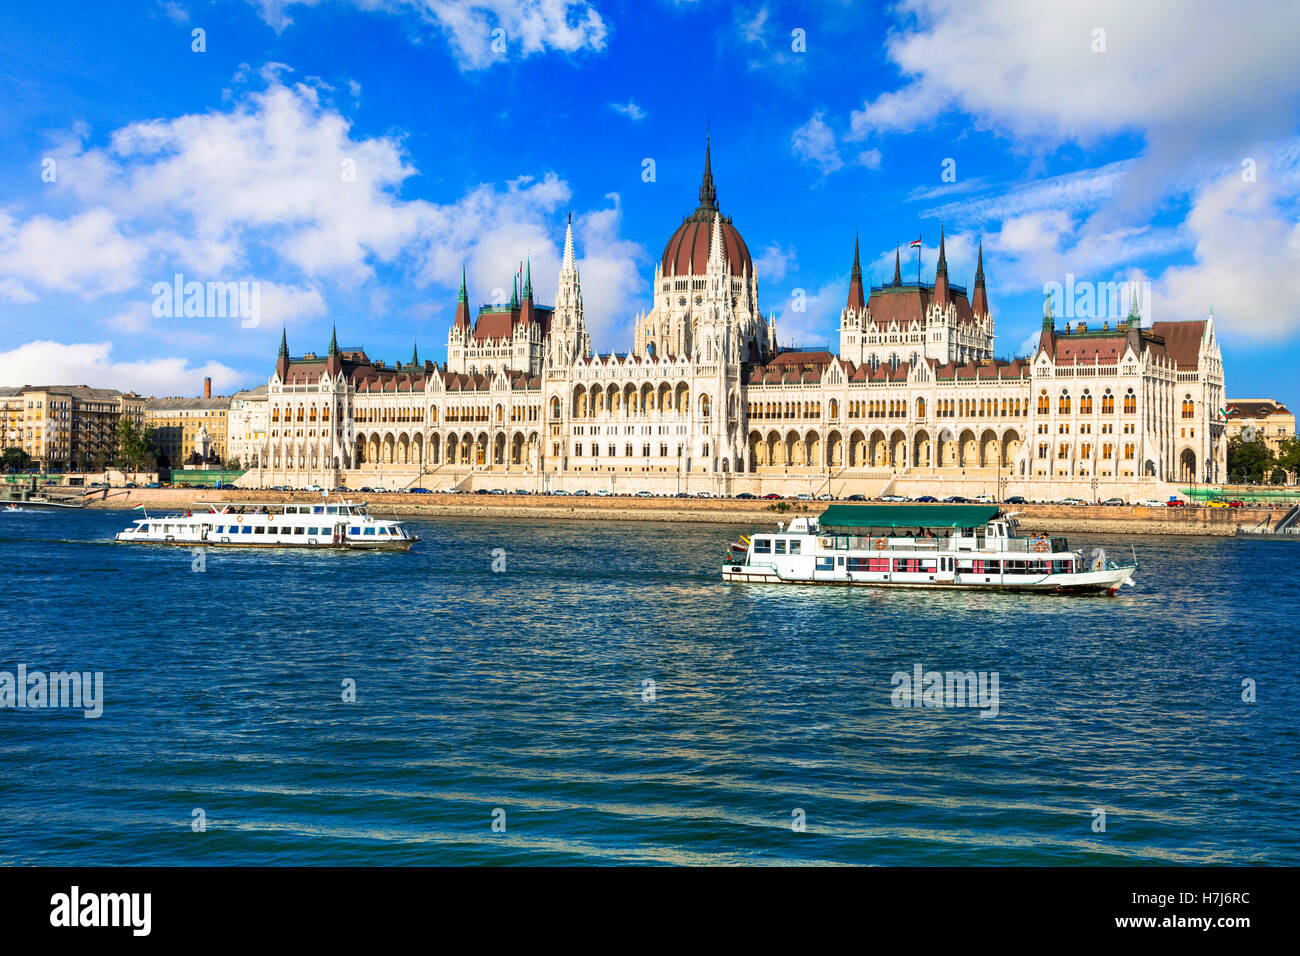 Monumentos europeos - famoso edificio del parlamento en Budapest, Hungría Foto de stock